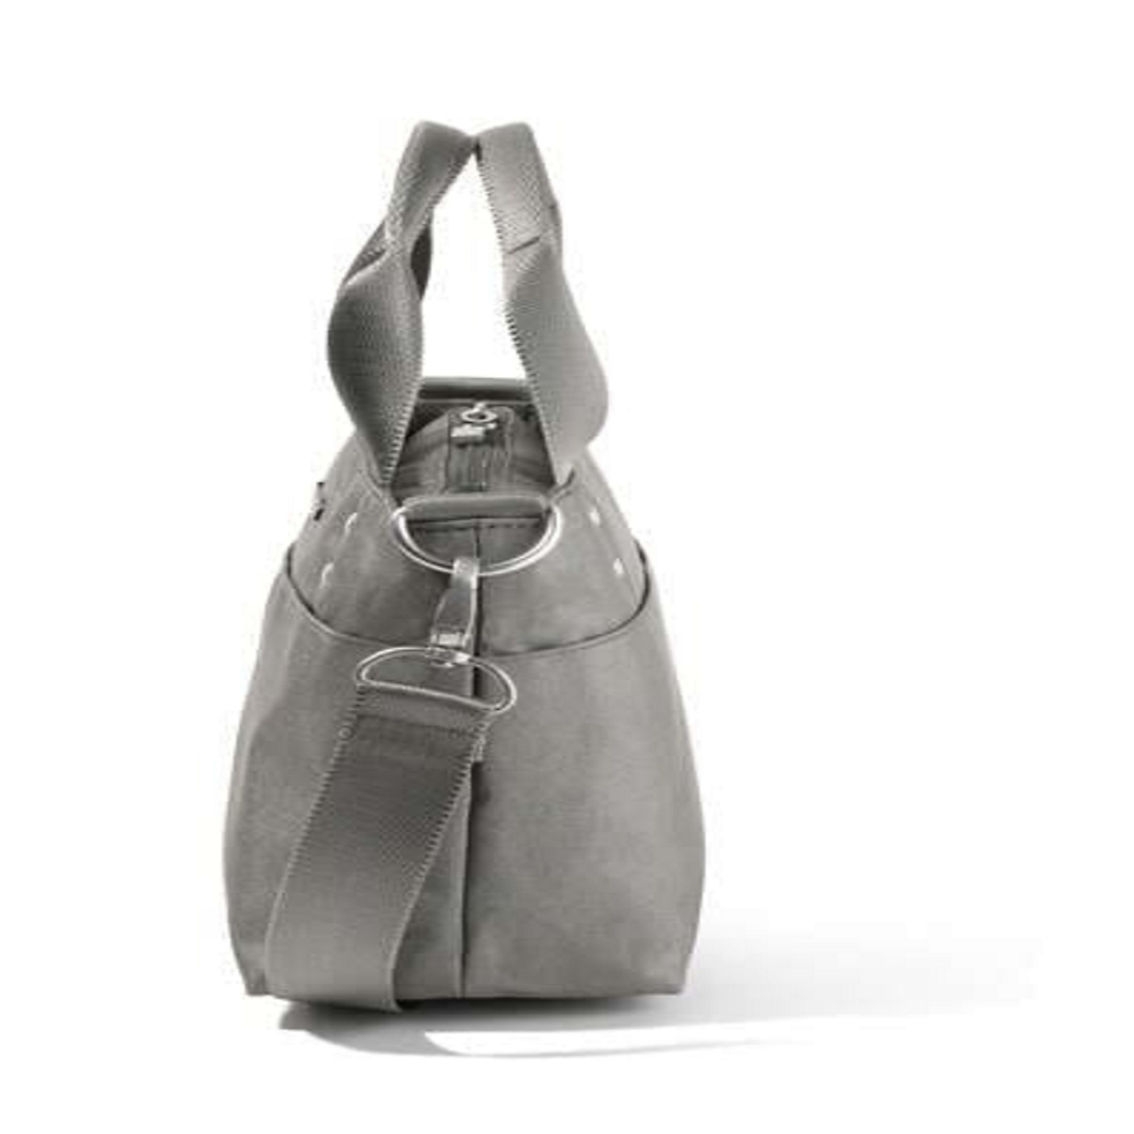 baggallini Women's Mini Carryall Tote Bag - Image 5 of 5